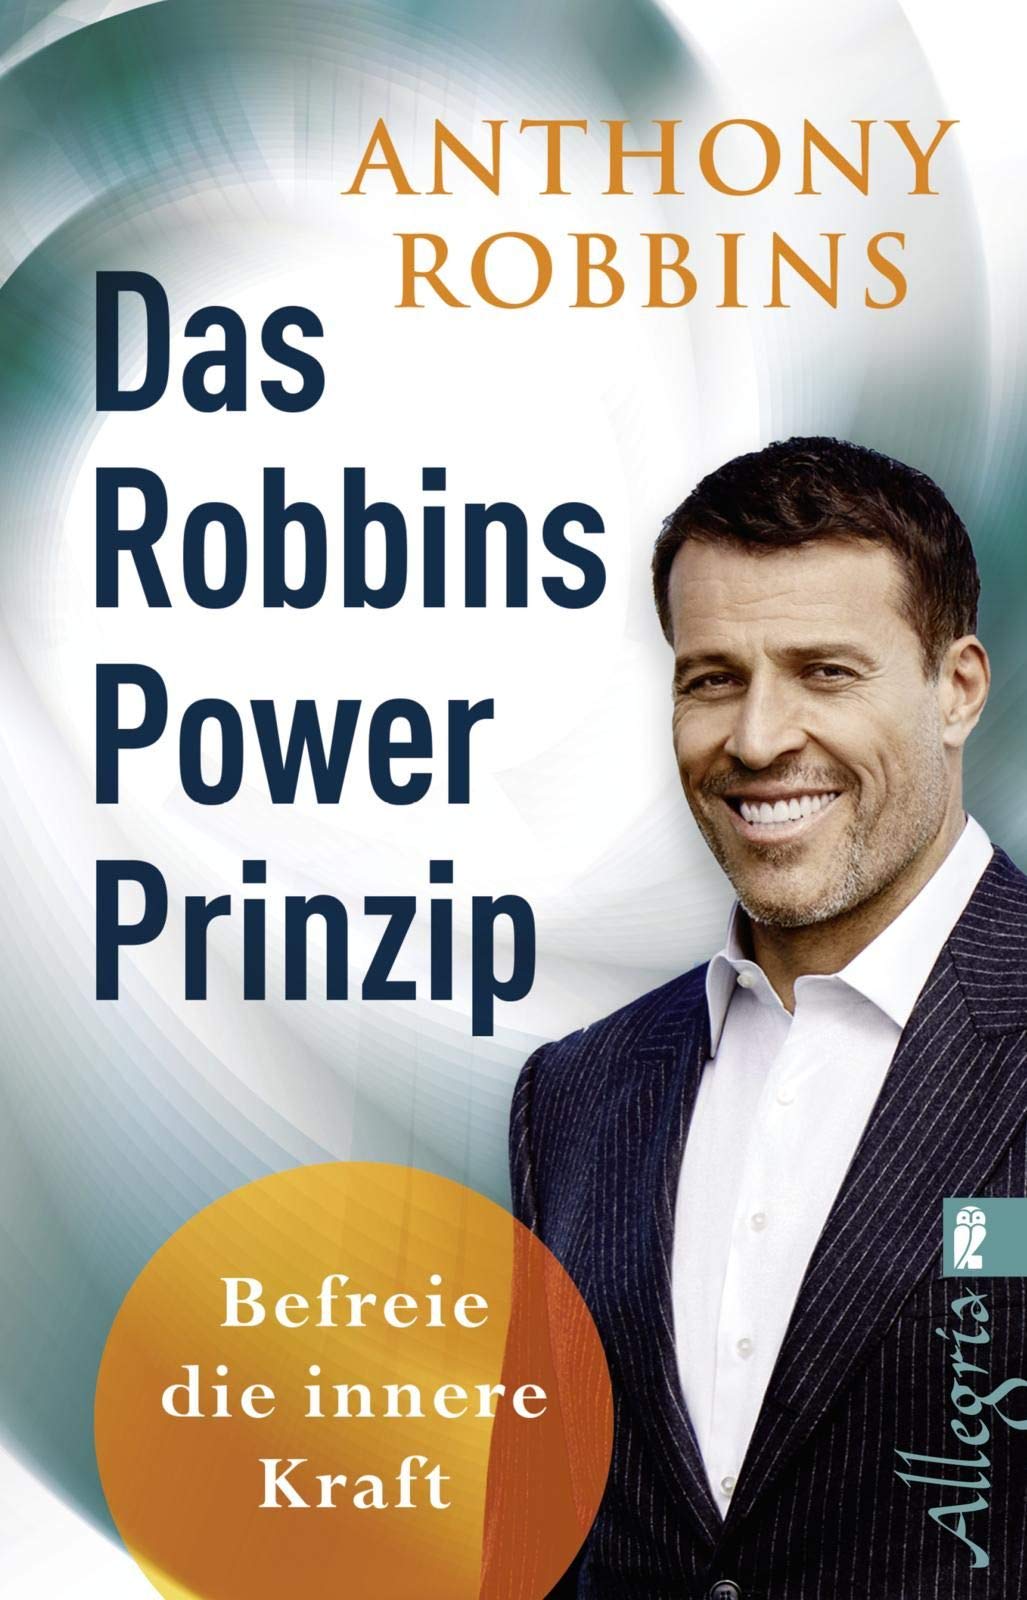 Das Robbins Power Prinzip: Befreie die innere Kraft von Anthony Robbins